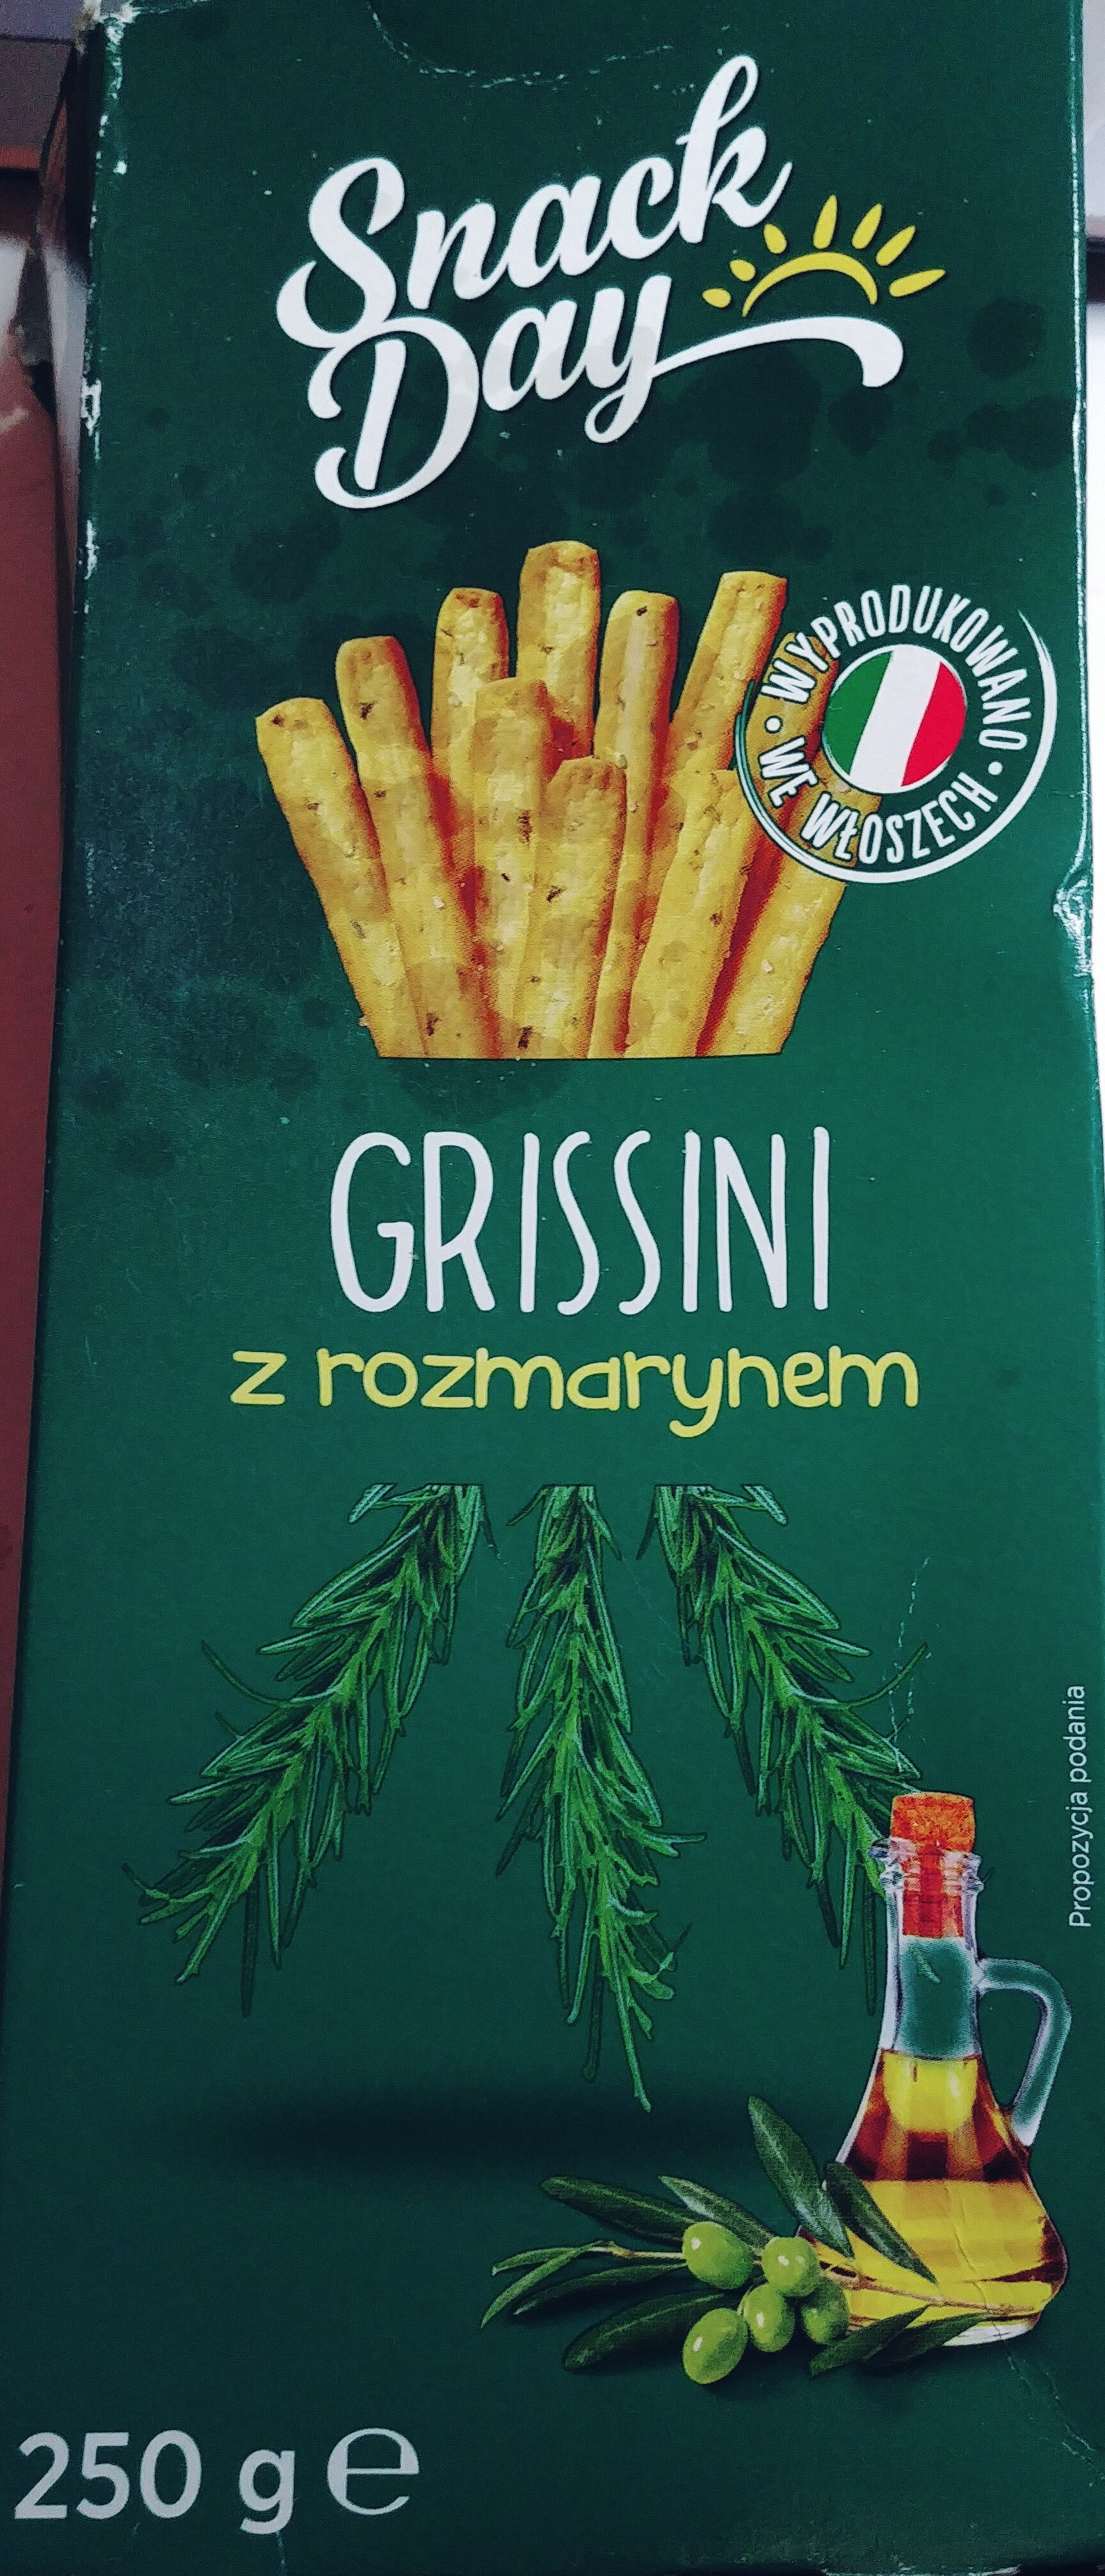 Grissini Rosmarino - Breadsticks with Rosemary - Produkt